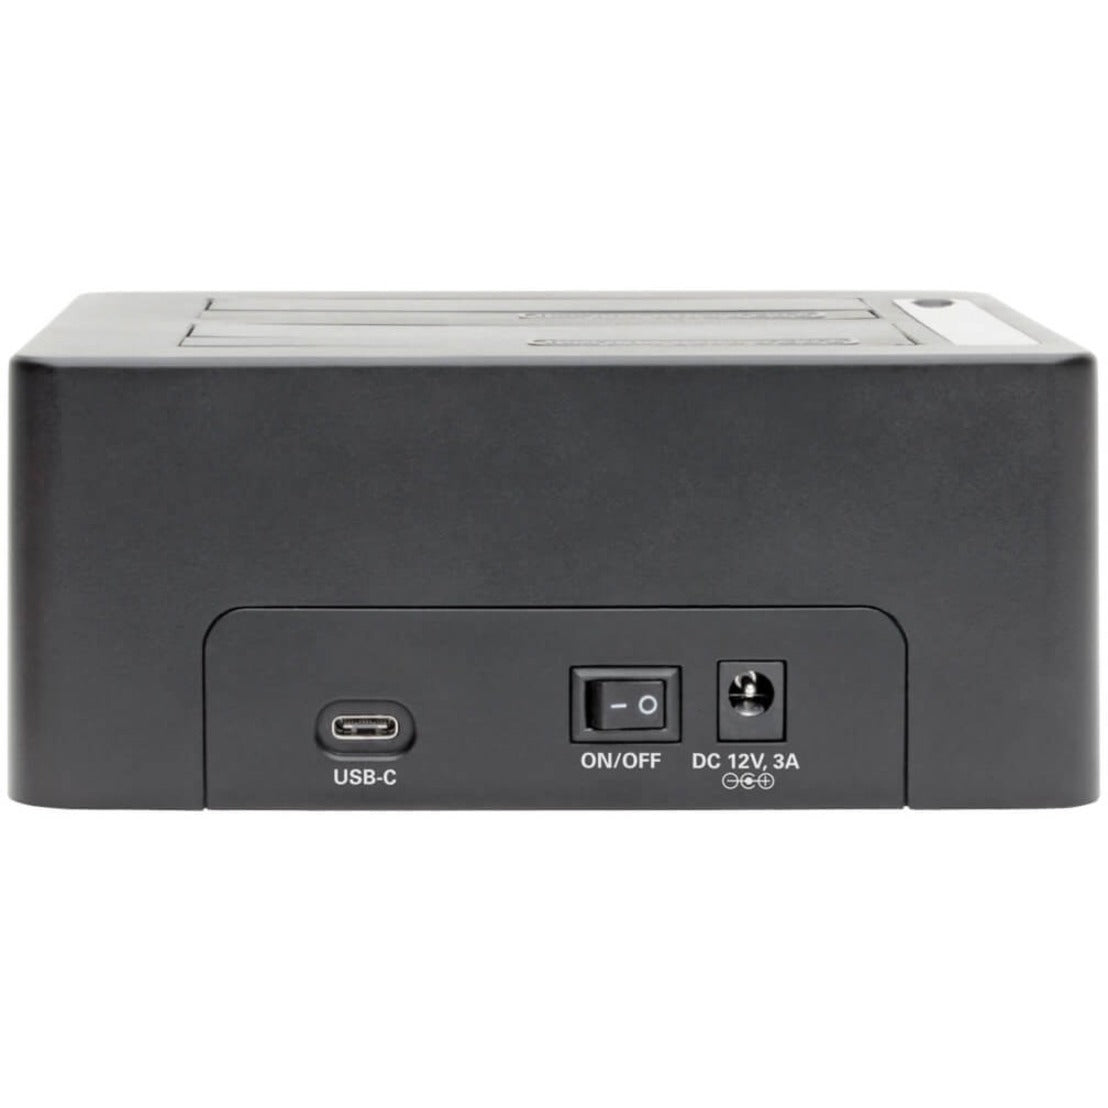 Tripp Lite U439-002-CG2 USB-C to SATA Quick Dock, 2.5/3.5in HDD/SSD, USB 3.1 10Gb/s